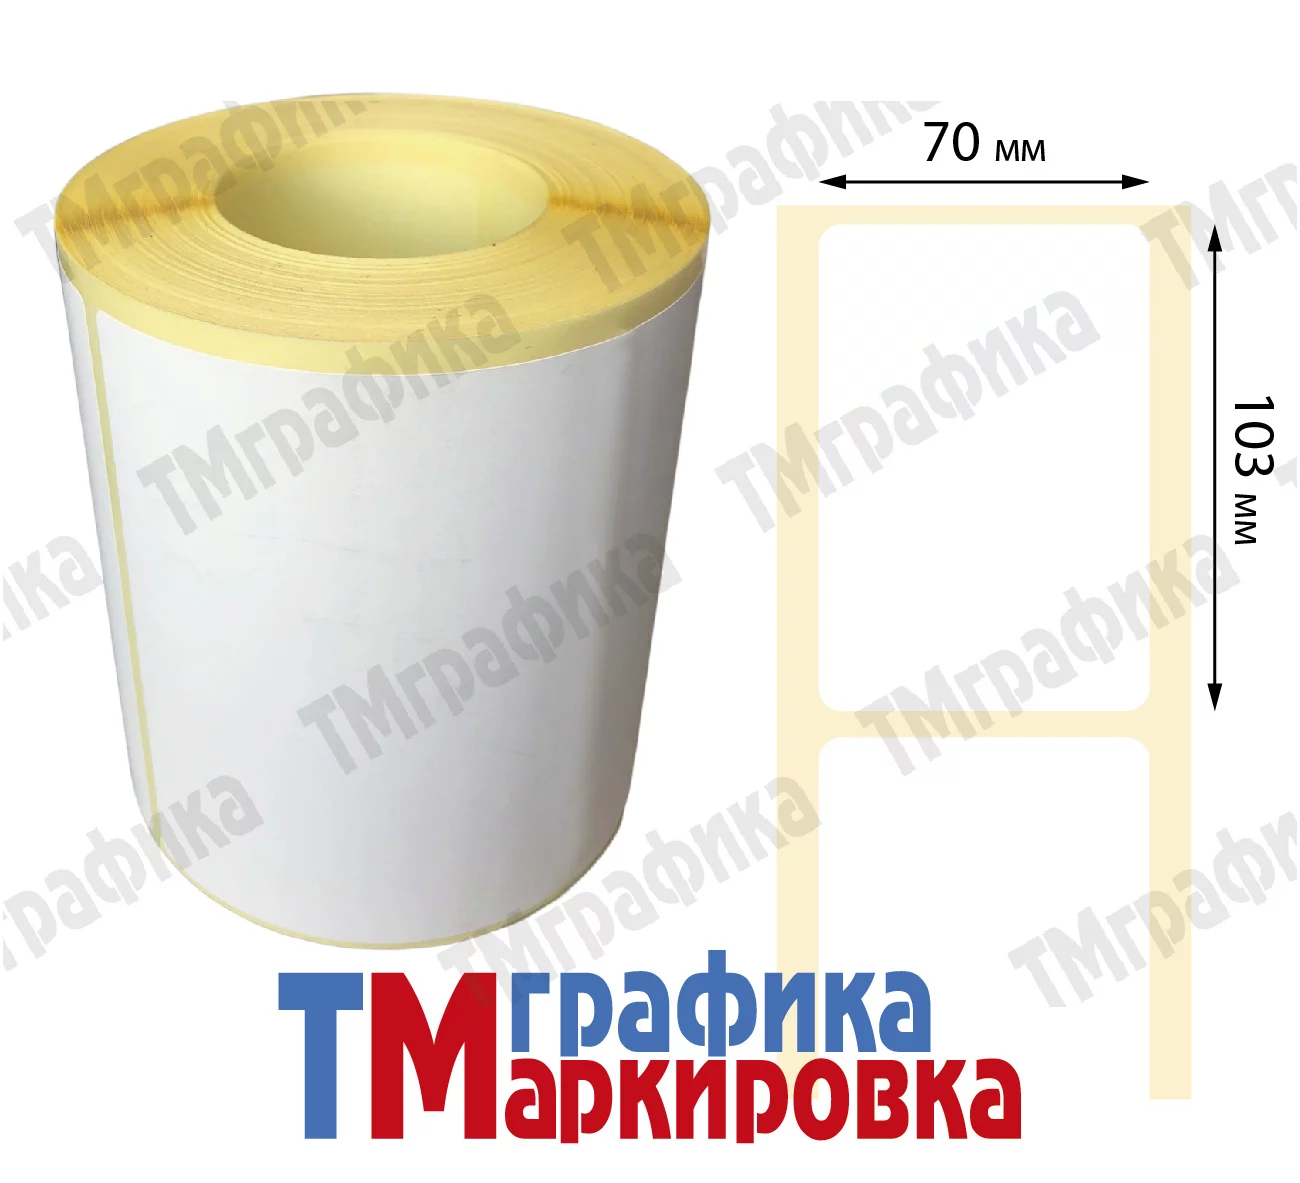 Термотрансферные этикетки в порошковом пропиленовом рулоне диаметром 40 мм 700 шт. распечатаны на принтере (слайды)